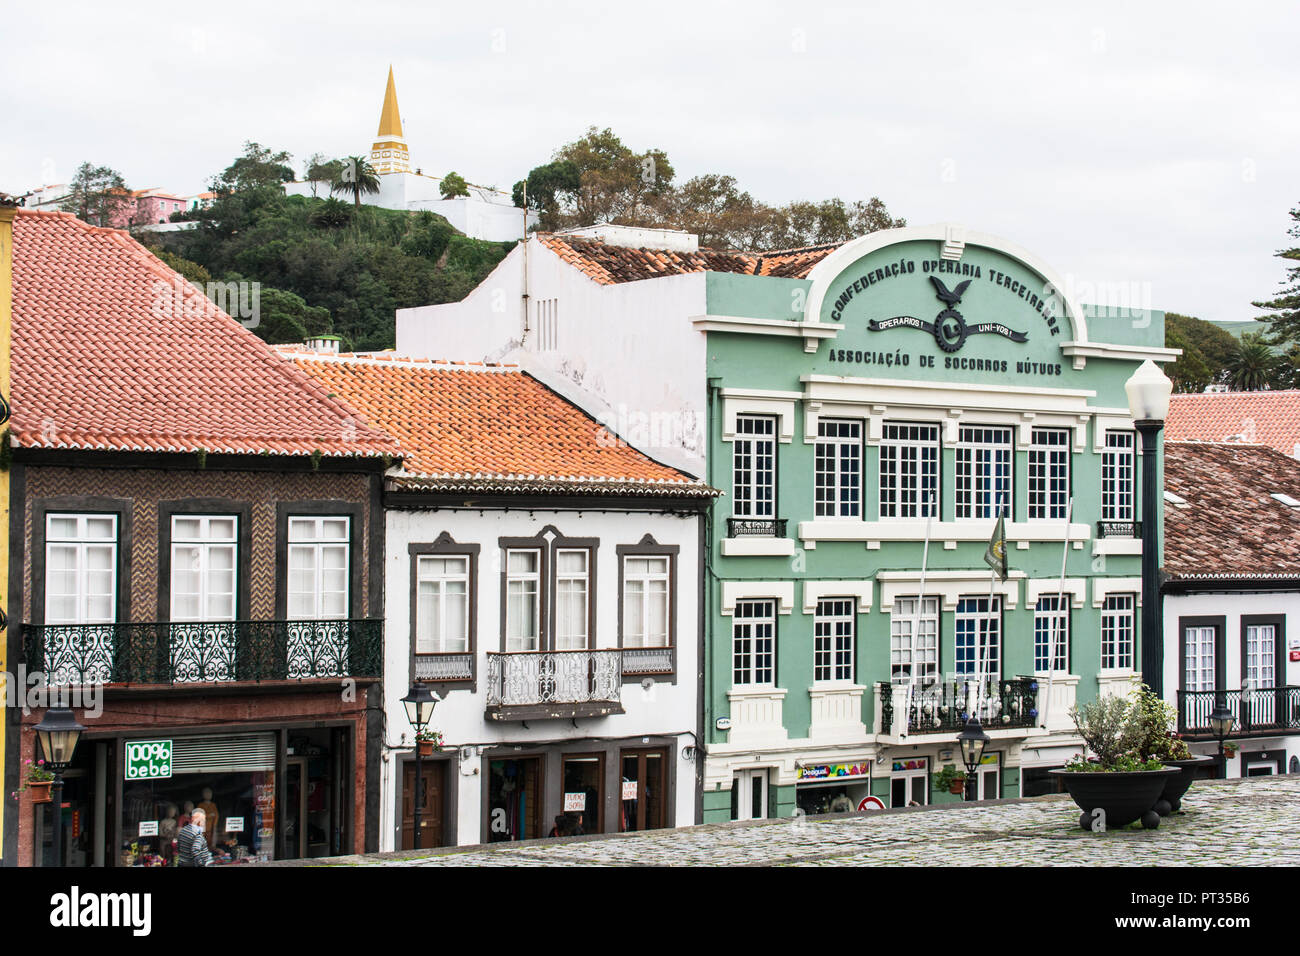 Les maisons de ville d'Angra do Heroísmo sur l'île de Terceira aux Açores Banque D'Images